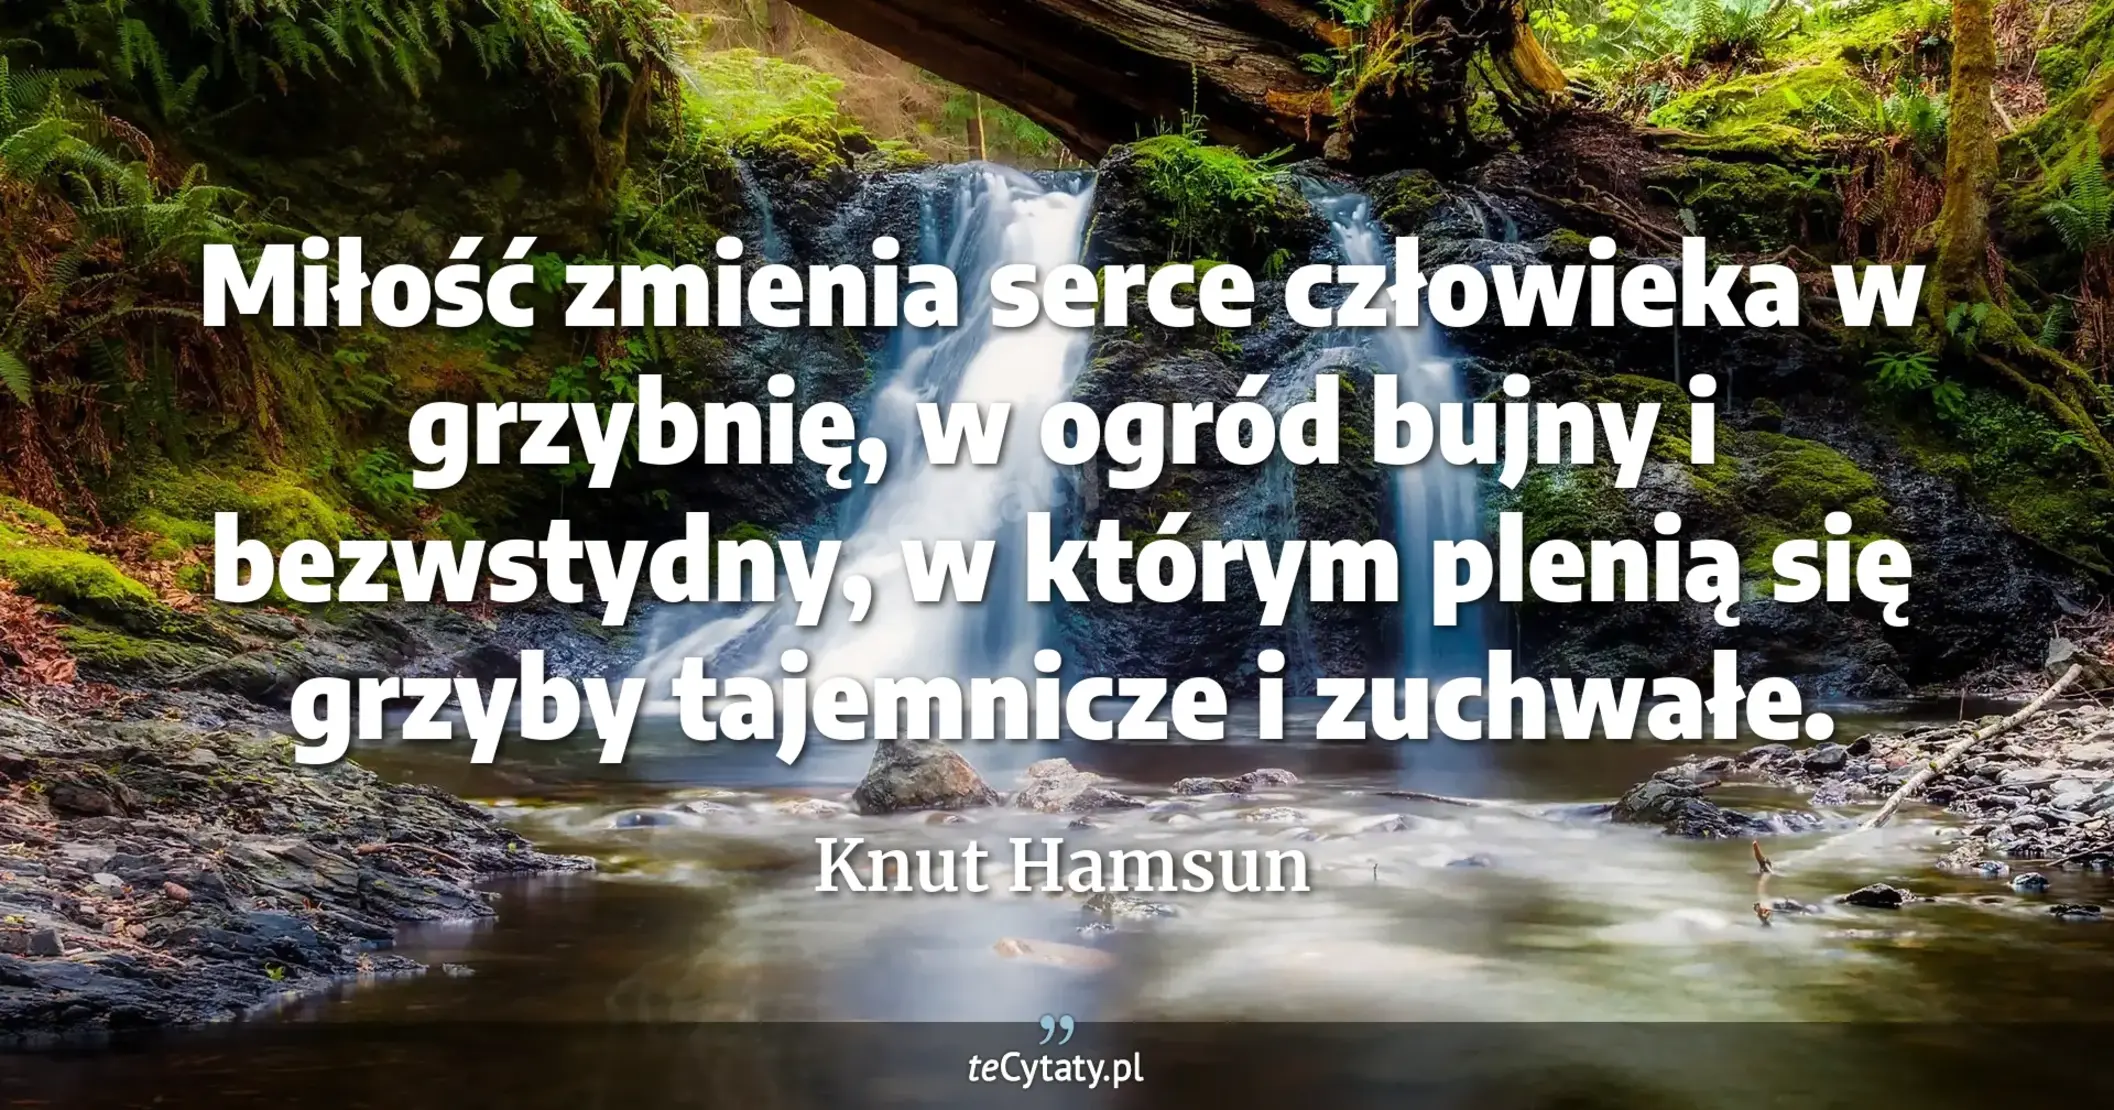 Miłość zmienia serce człowieka w grzybnię, w ogród bujny i bezwstydny, w którym plenią się grzyby tajemnicze i zuchwałe. - Knut Hamsun